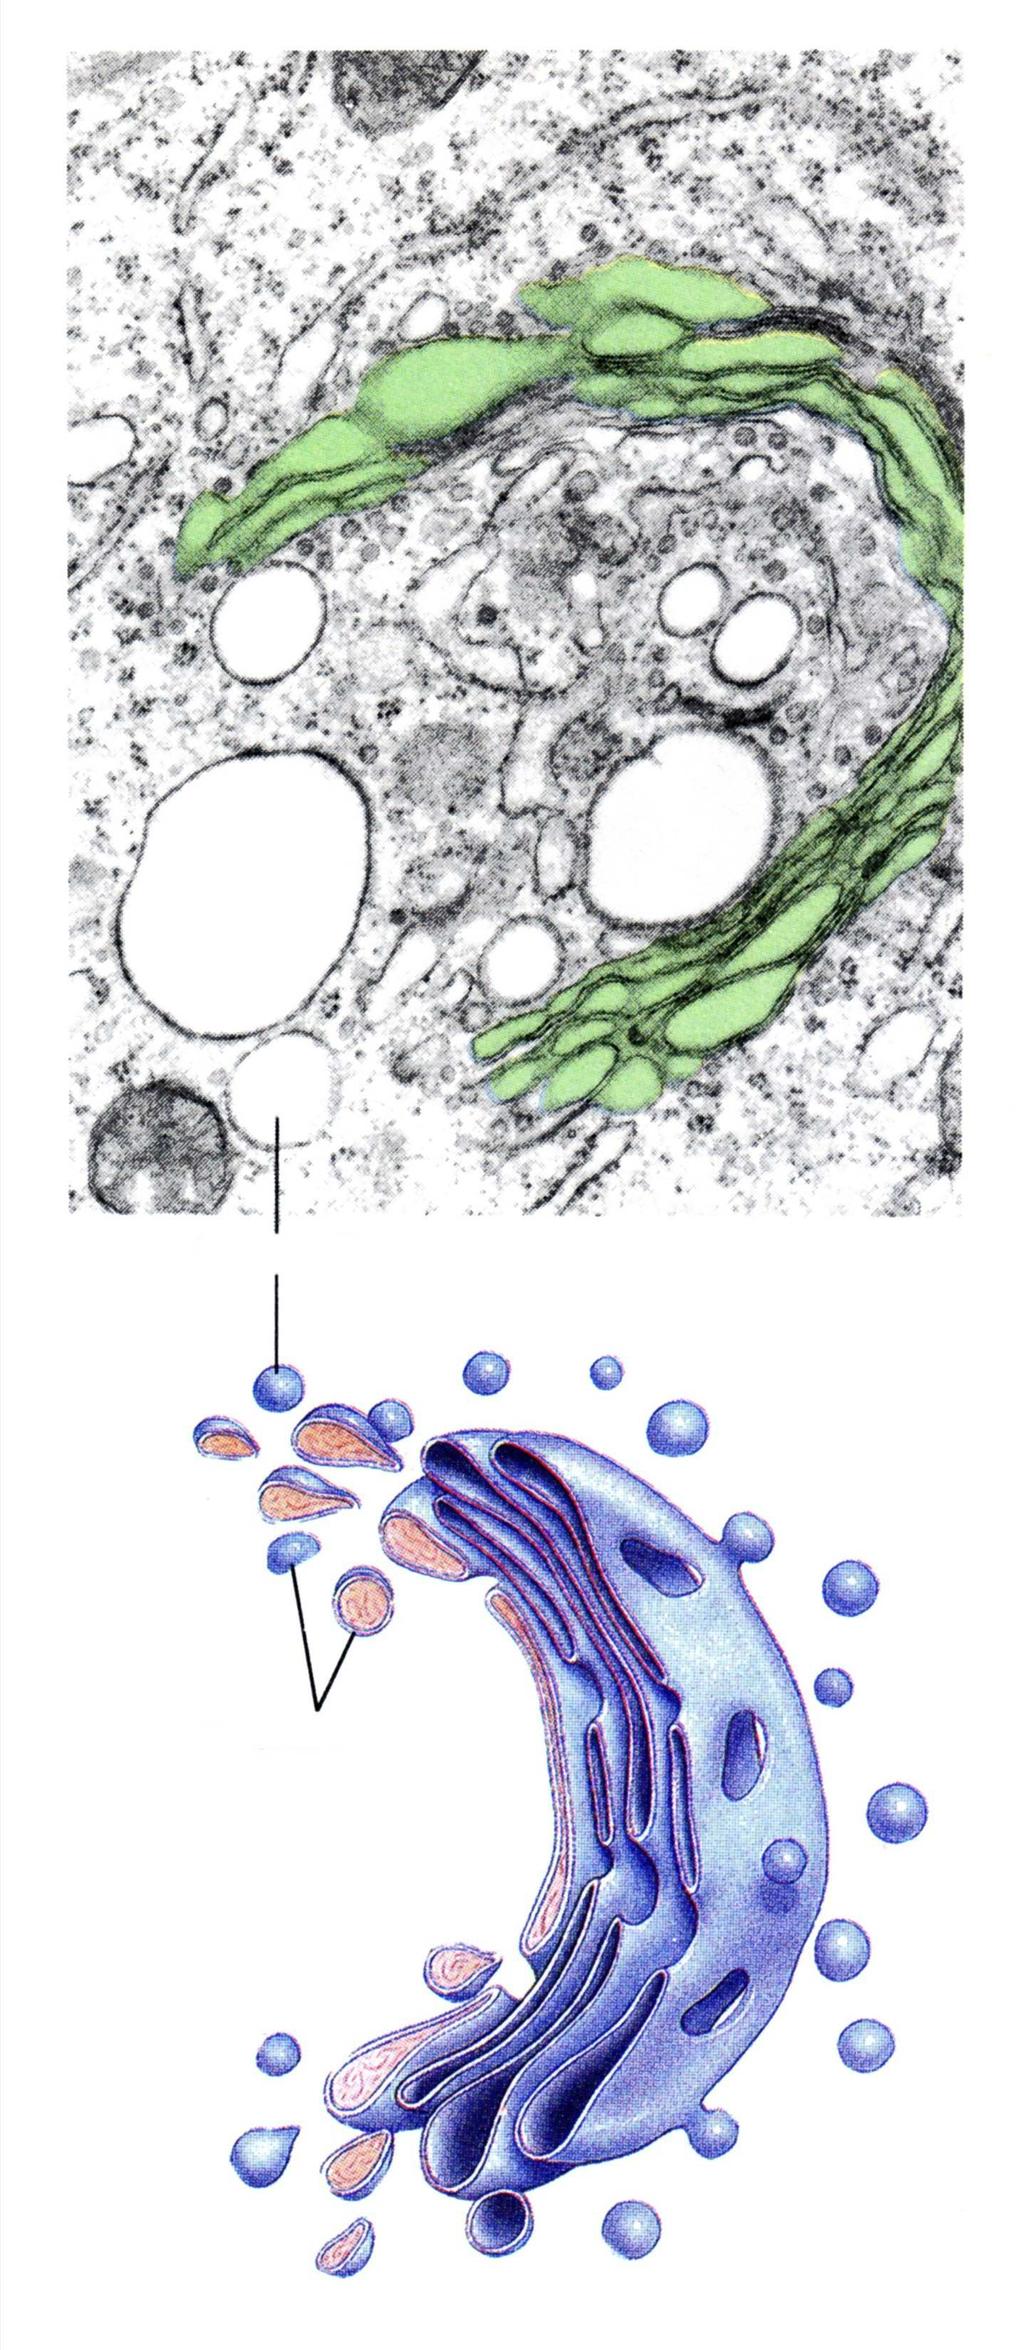 Nakupina cisterni može formirati diskretne diktiosome kao u biljnoj stanici ili razvedenu mrežu kao što je slučaj u životinjskoj stanici.